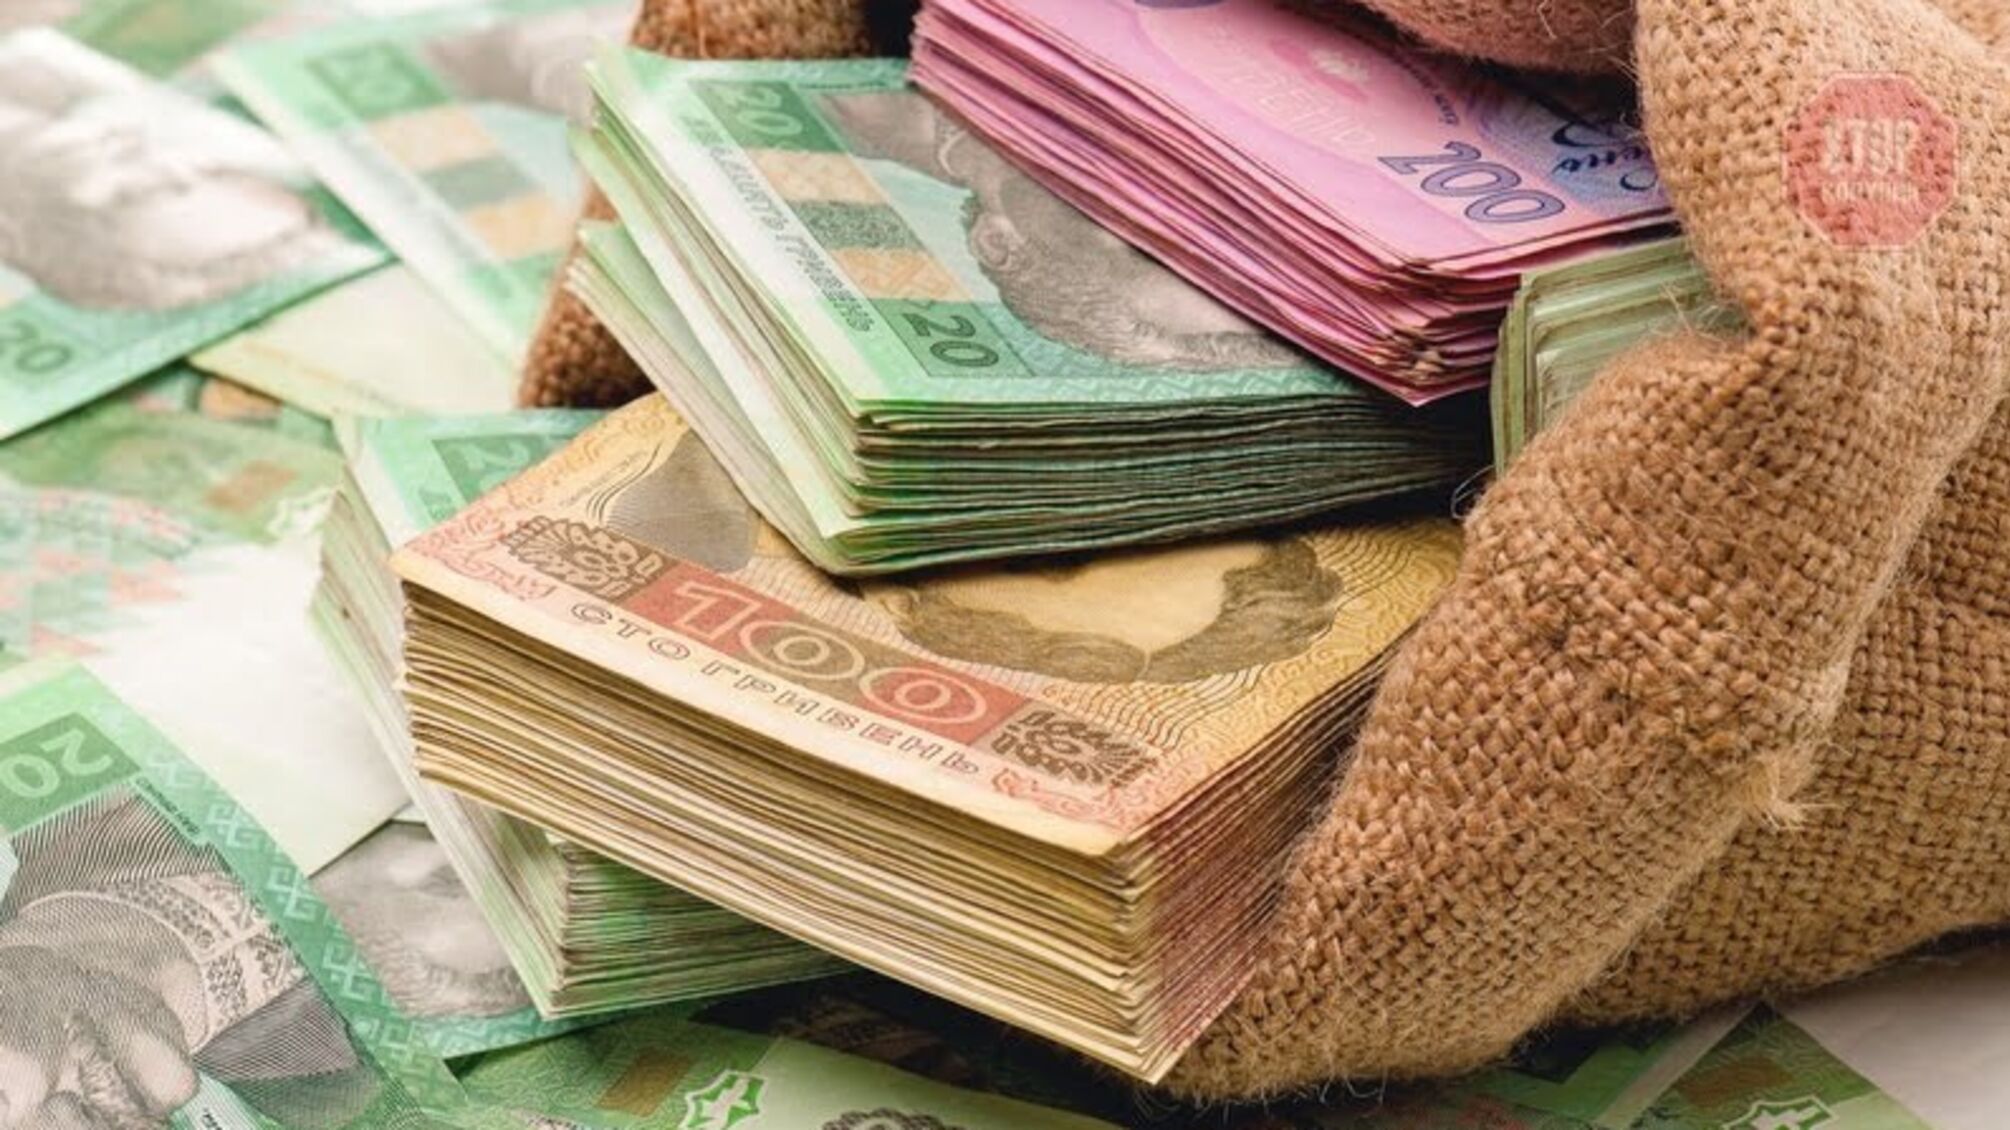 ГПУ повідомила про підозру співробітникам банку, які вивели 28 млн гривень